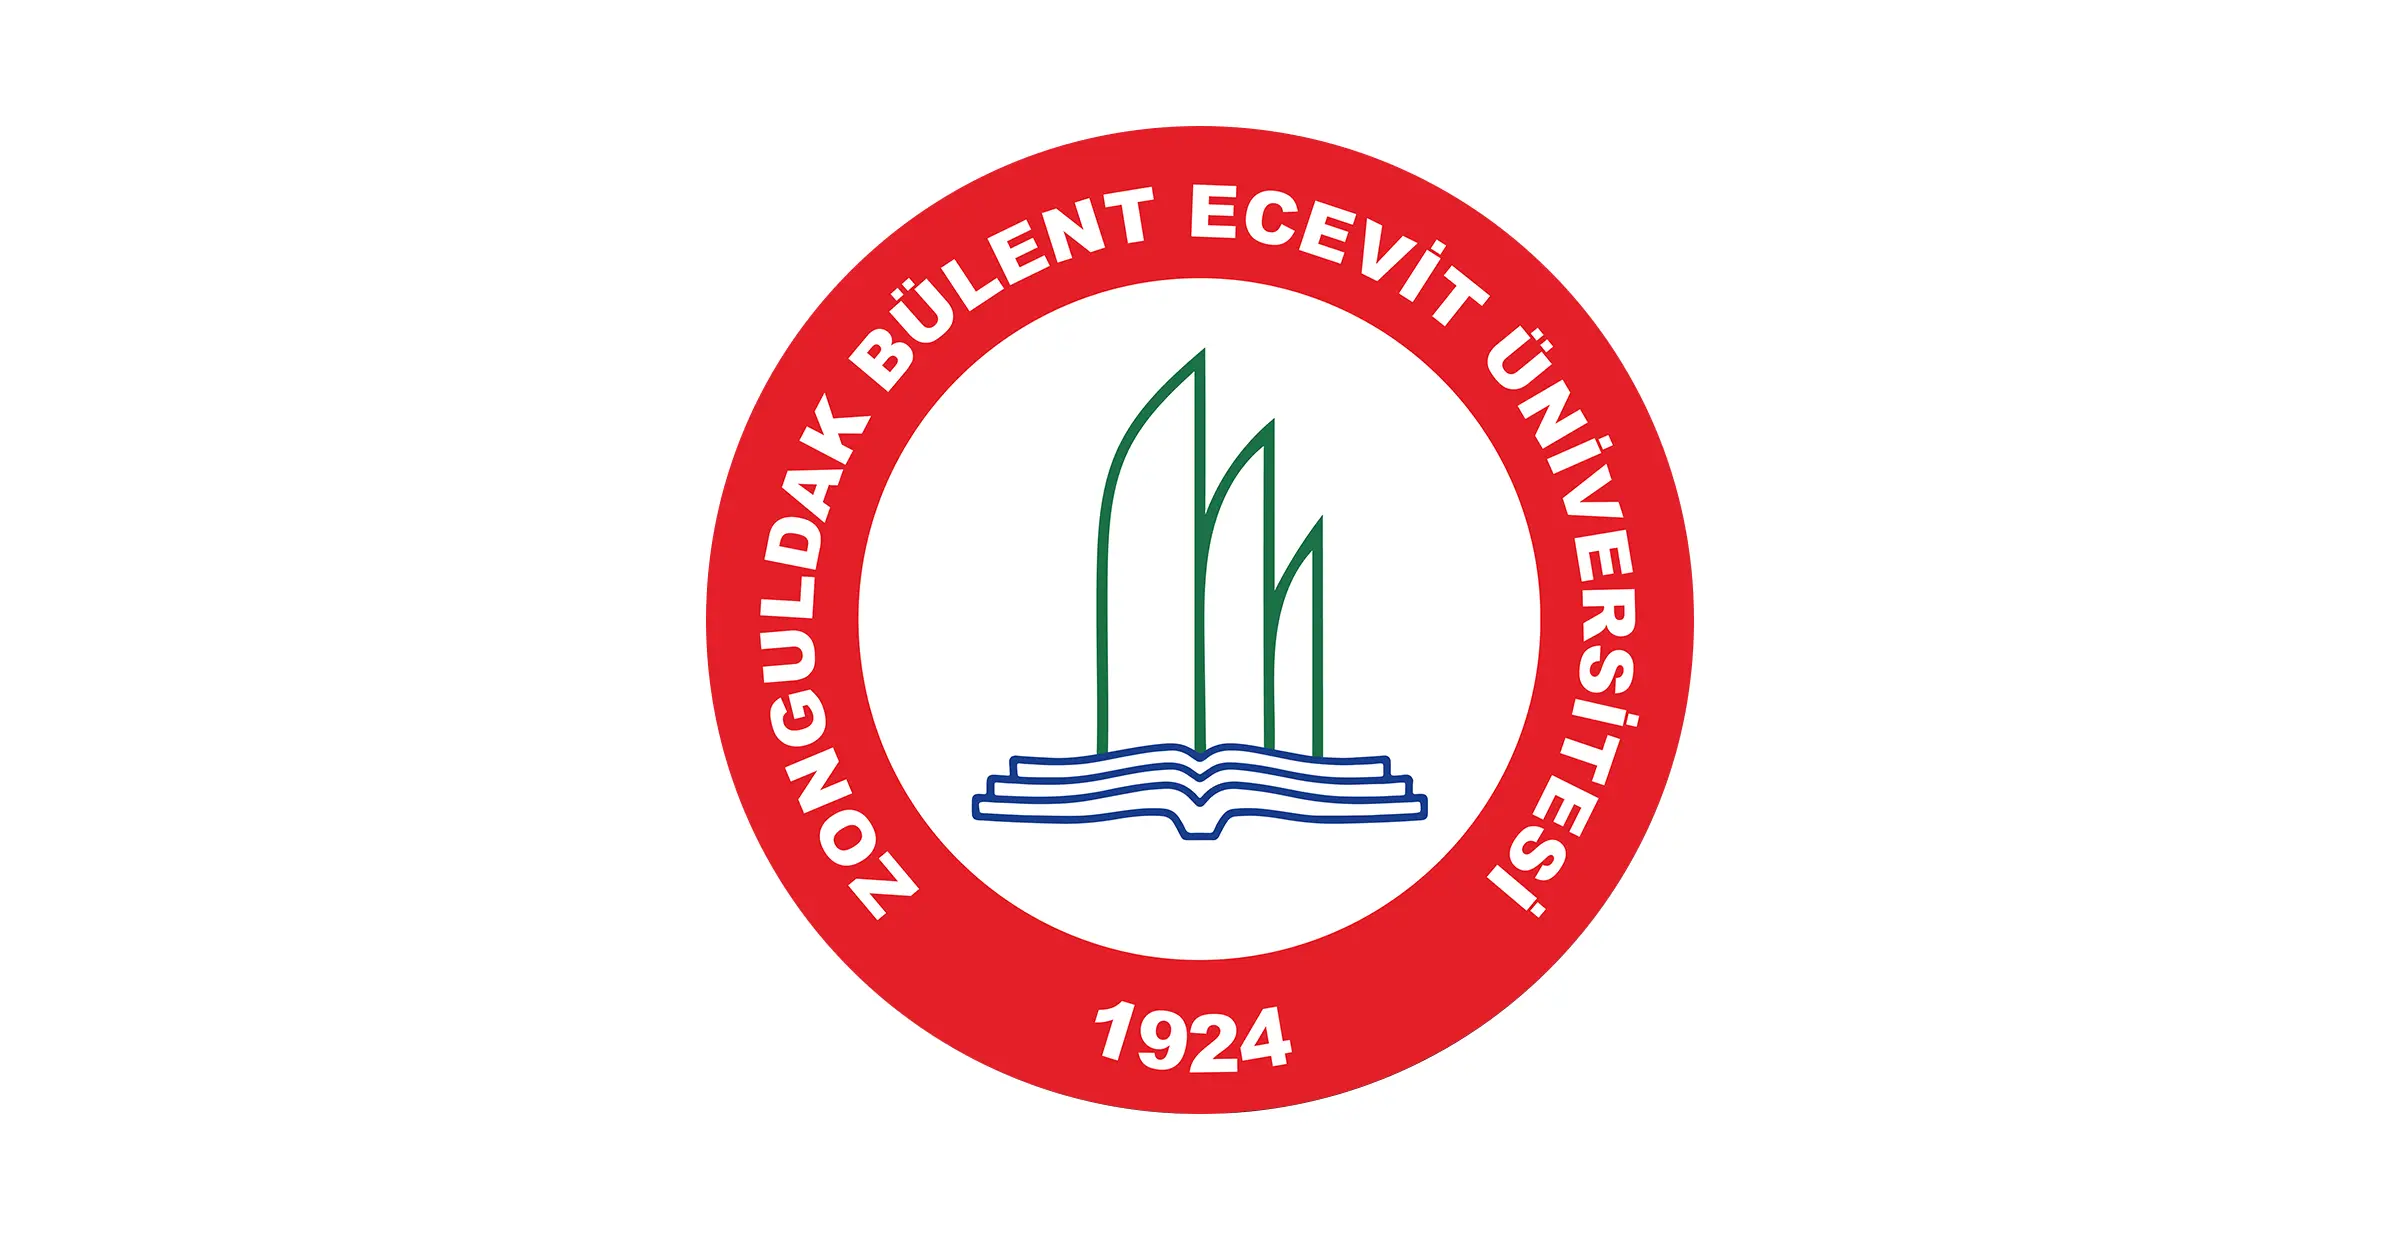 جامعة بولنت اجاويد Zonguldak Bülent Ecevit Üniversitesi هي جامعة حكومية تركية تأسست عام 1992 في مدينة زونغولداك. وتحتوي على 15 كلية